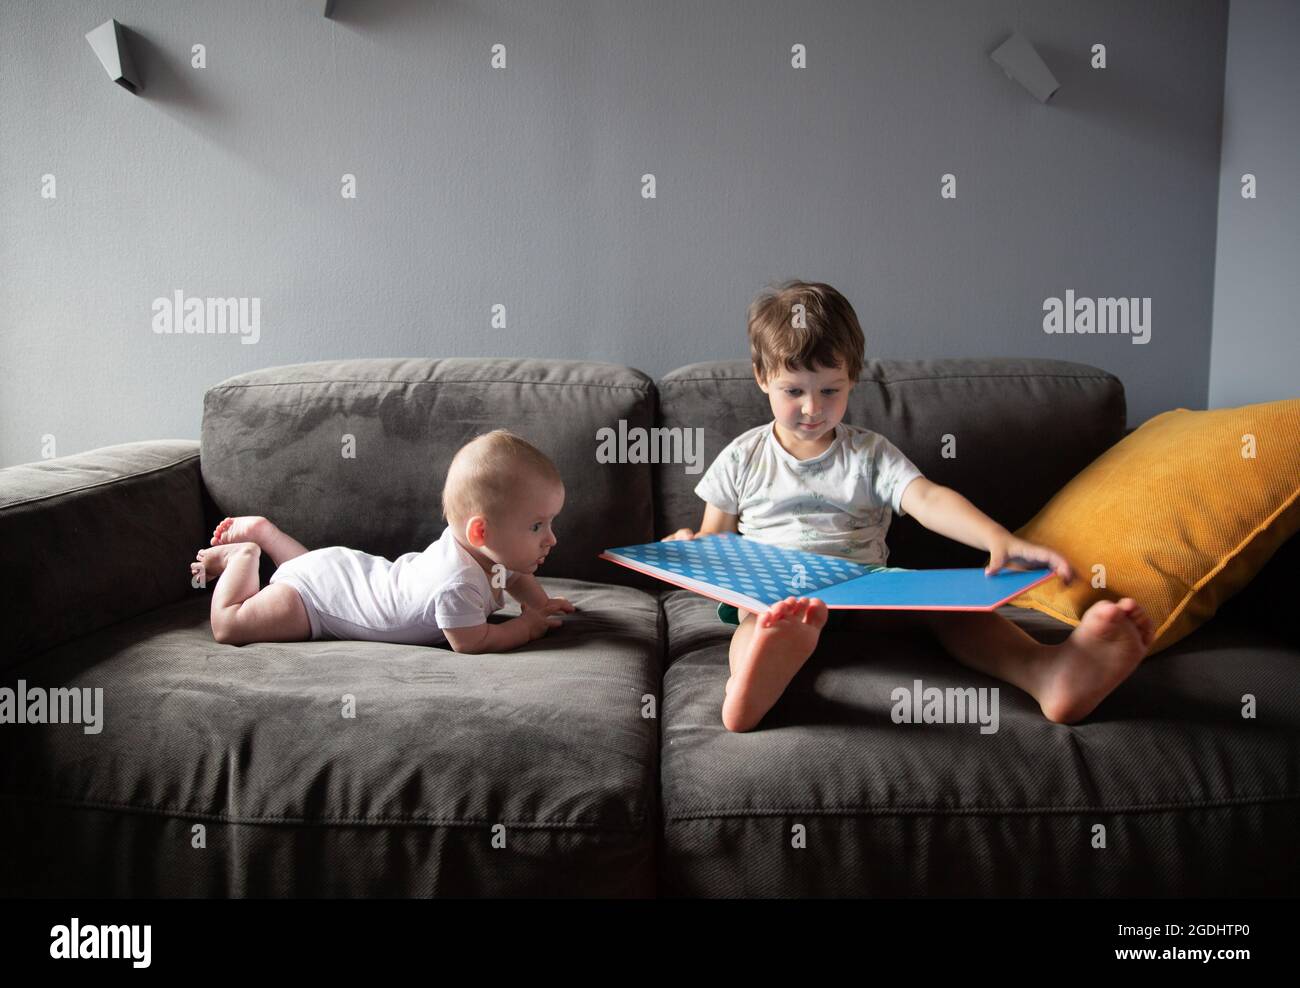 garçon lit un livre assis sur le canapé et son frère est couché à proximité Banque D'Images